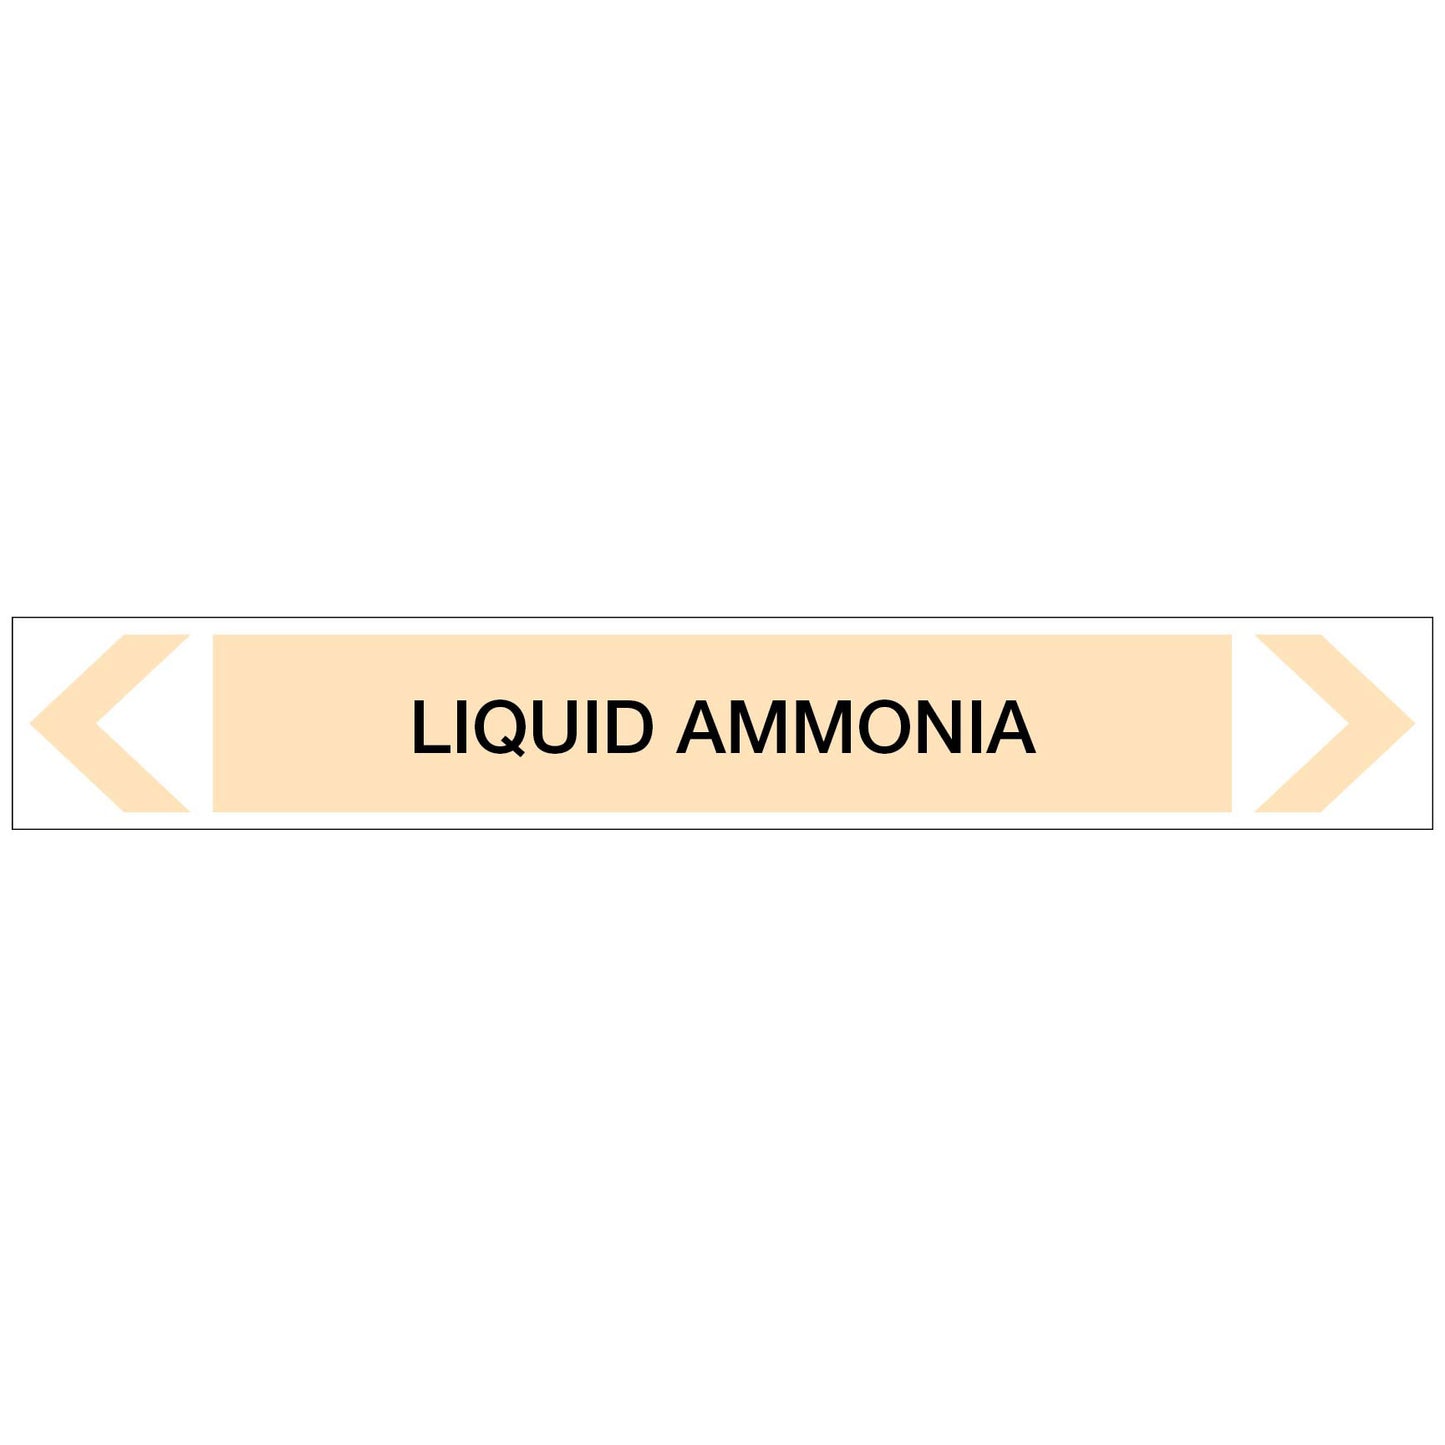 Gases - Liquid Ammonia - Pipe Marker Sticker